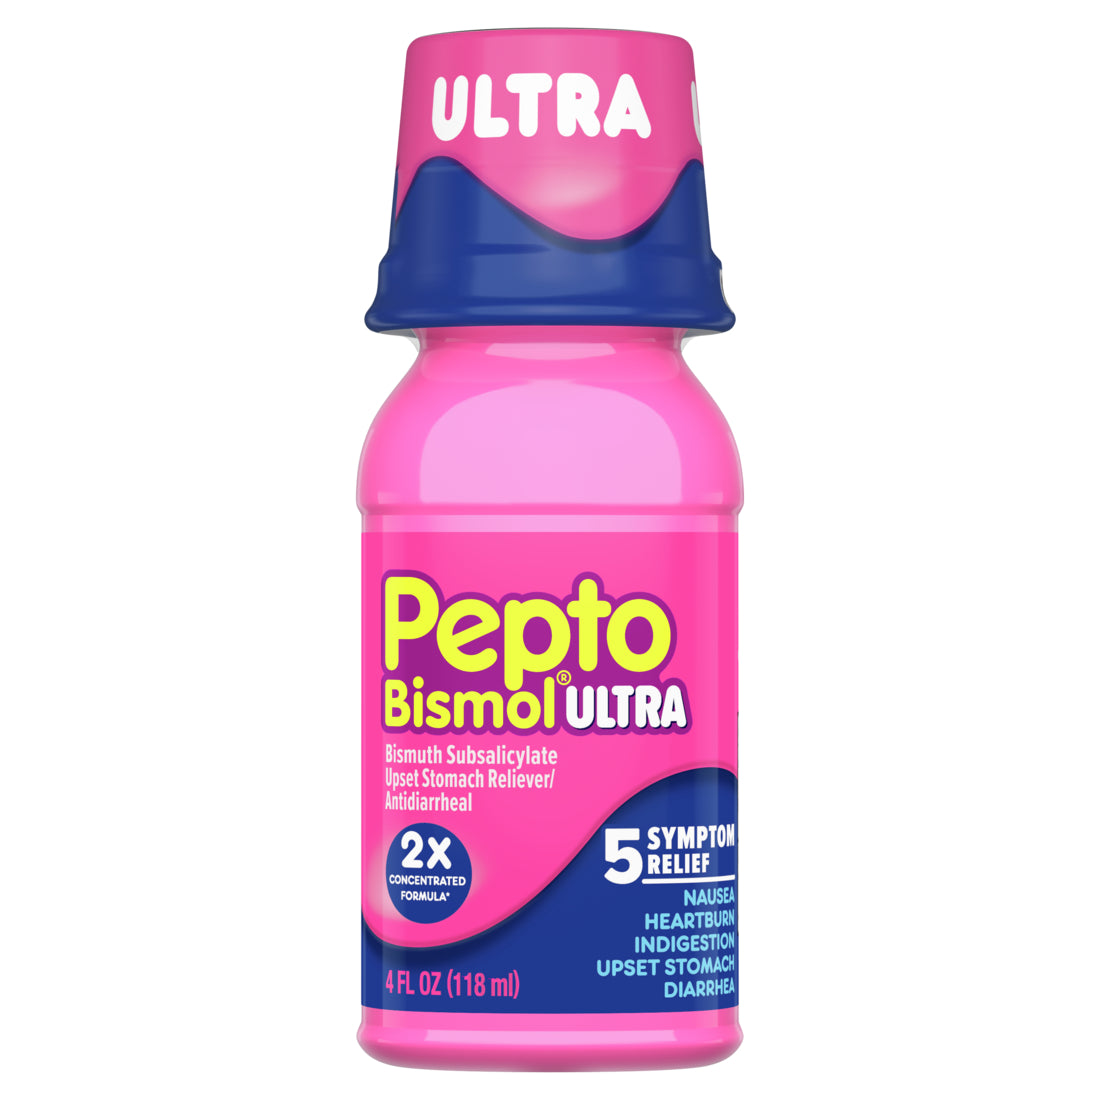 Pepto Bismol Liquid Ultra for 5 Symptom Fast Relief Original Flavor - 4oz/12pk